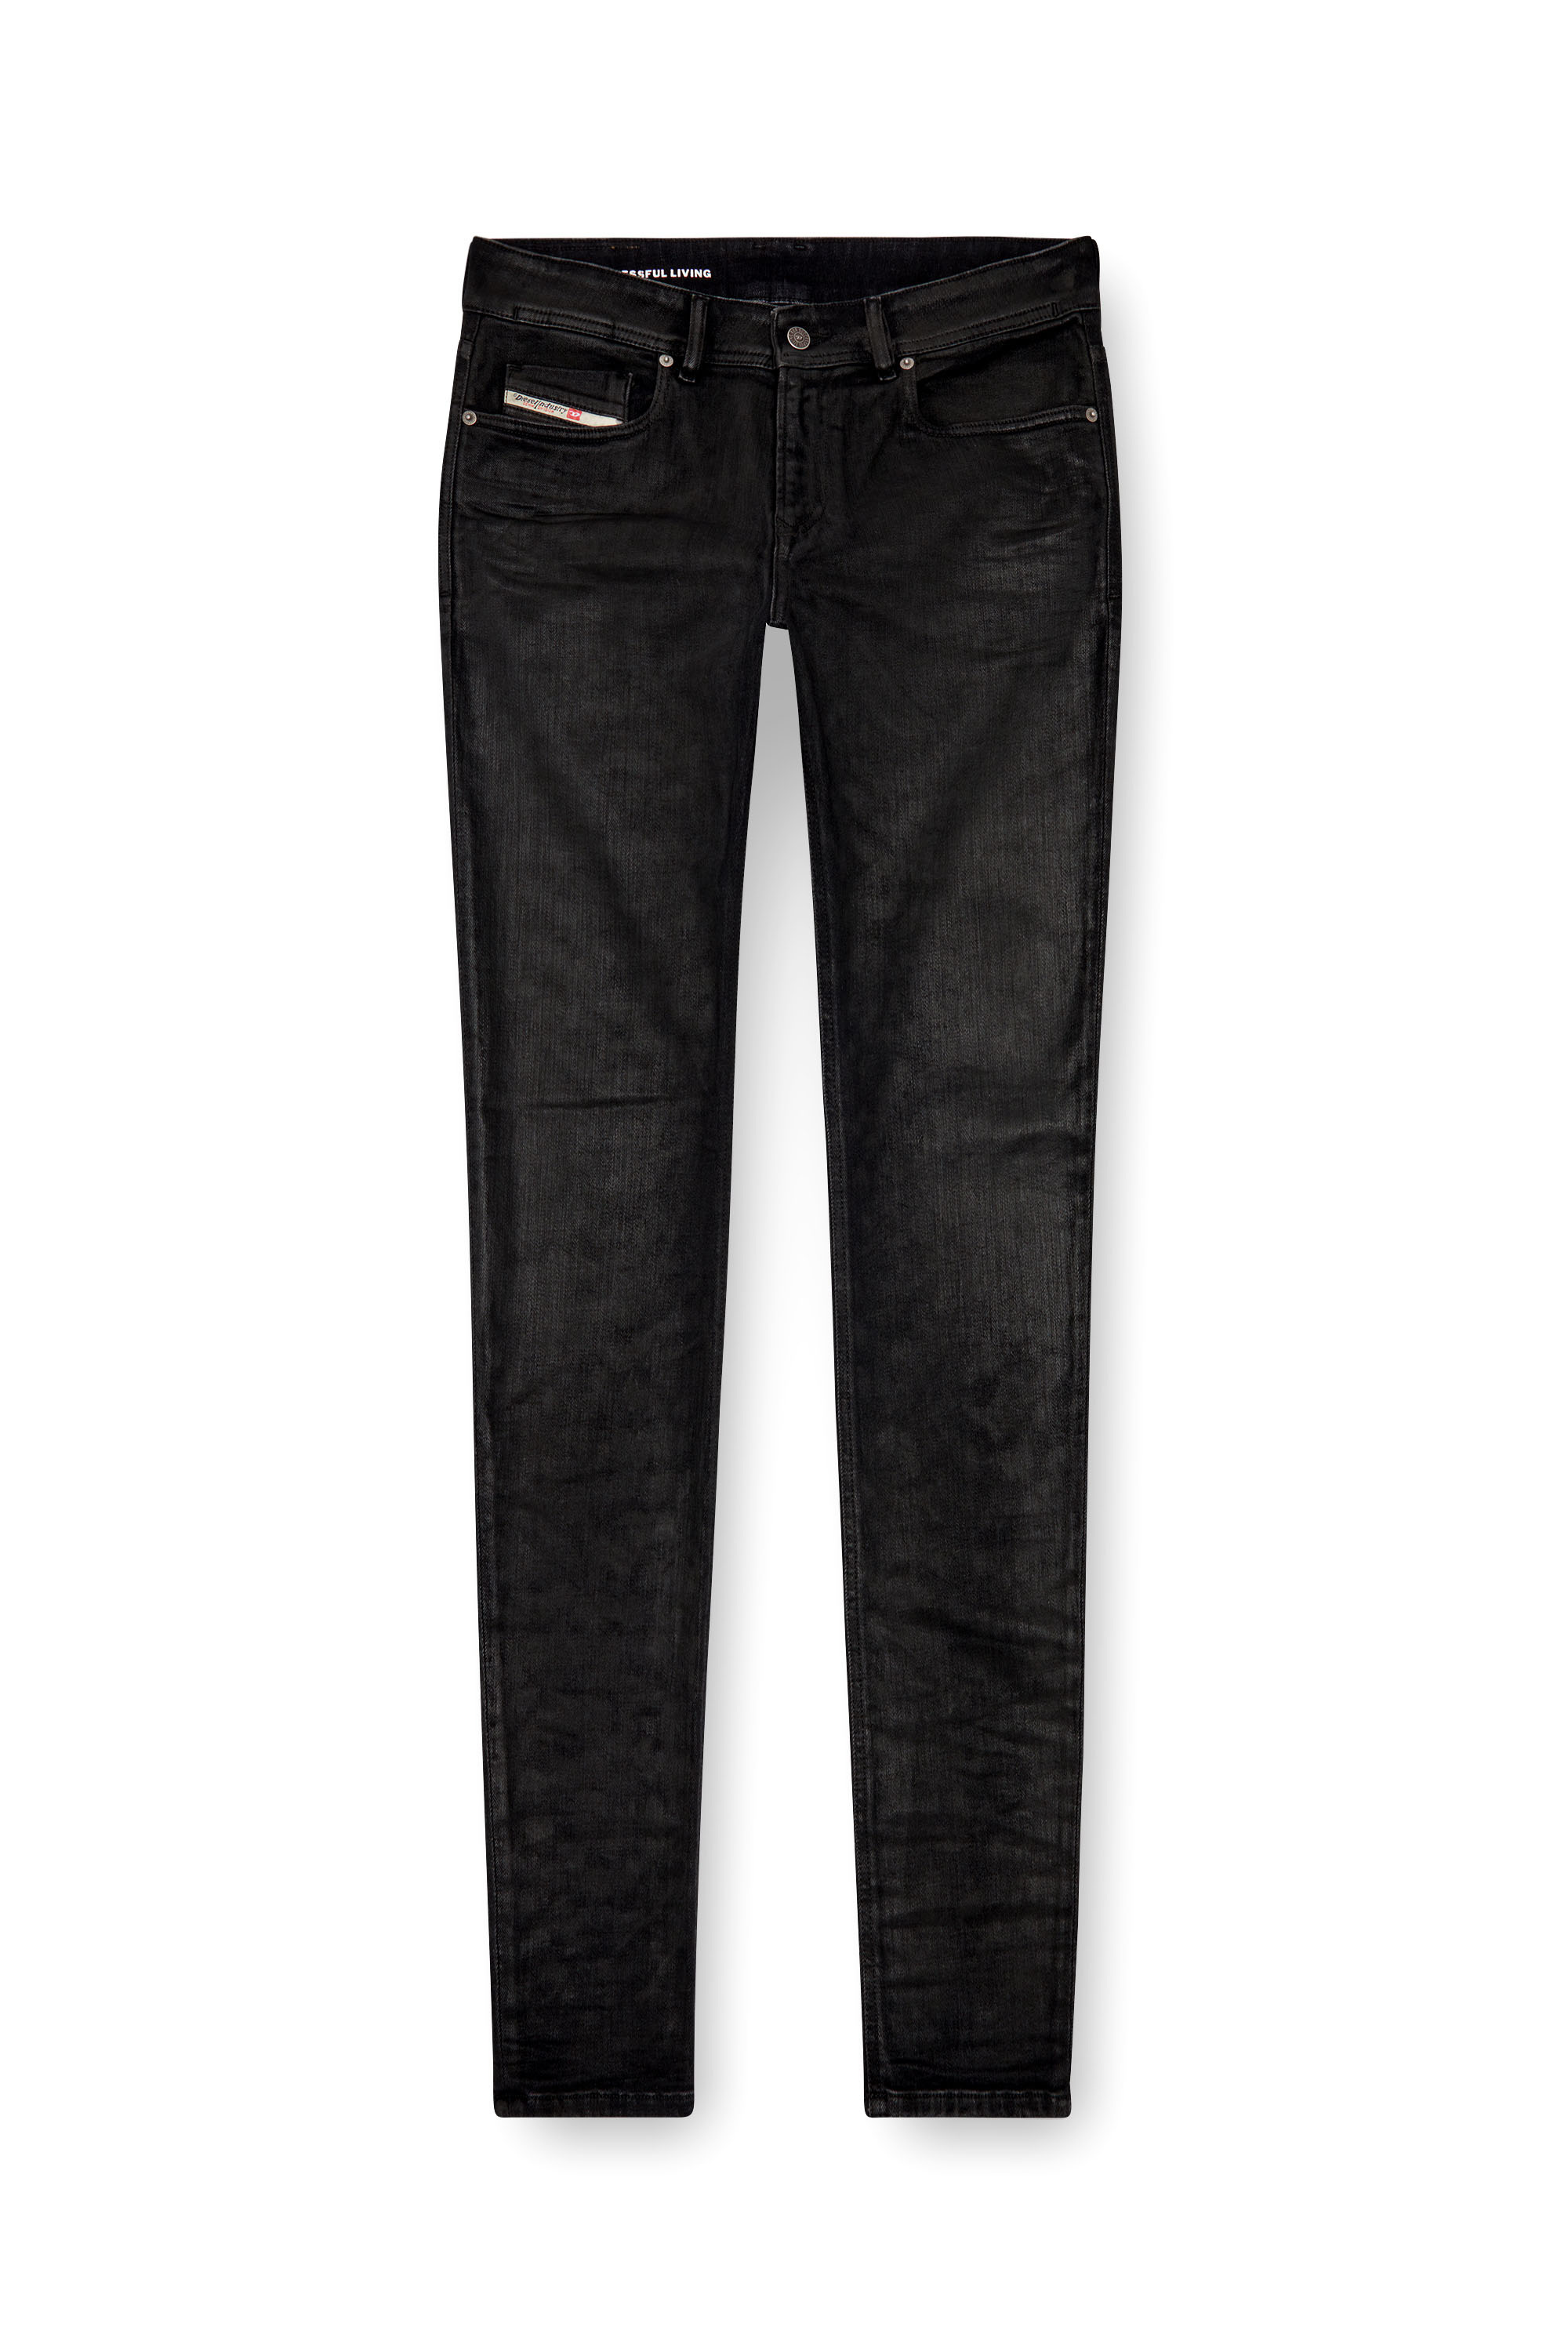 Diesel - Man Skinny Jeans 1979 Sleenker 09J30, Black/Dark grey - Image 3